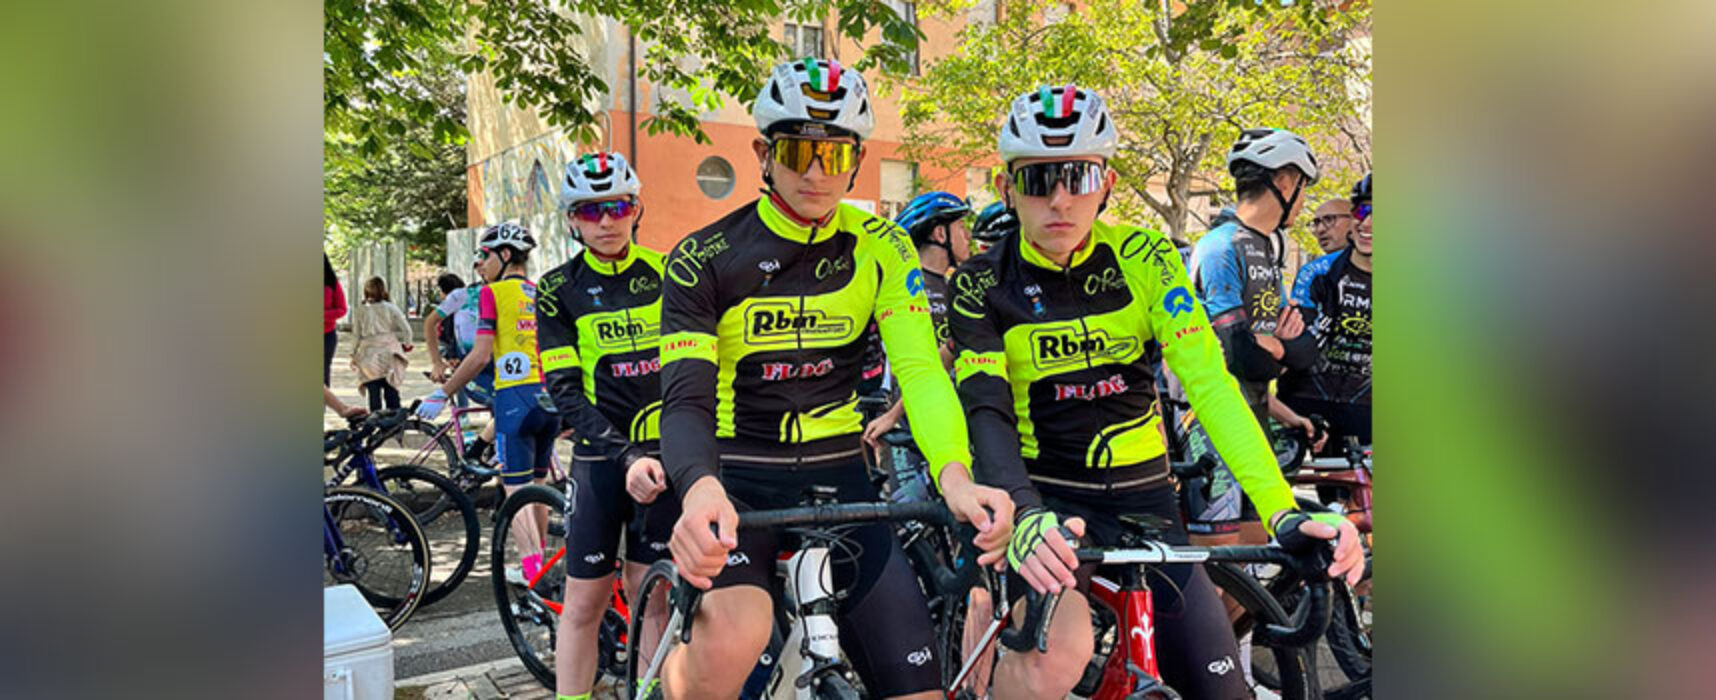 Team Teens- O.P. Bike in Abruzzo per il Trofeo Ferromental